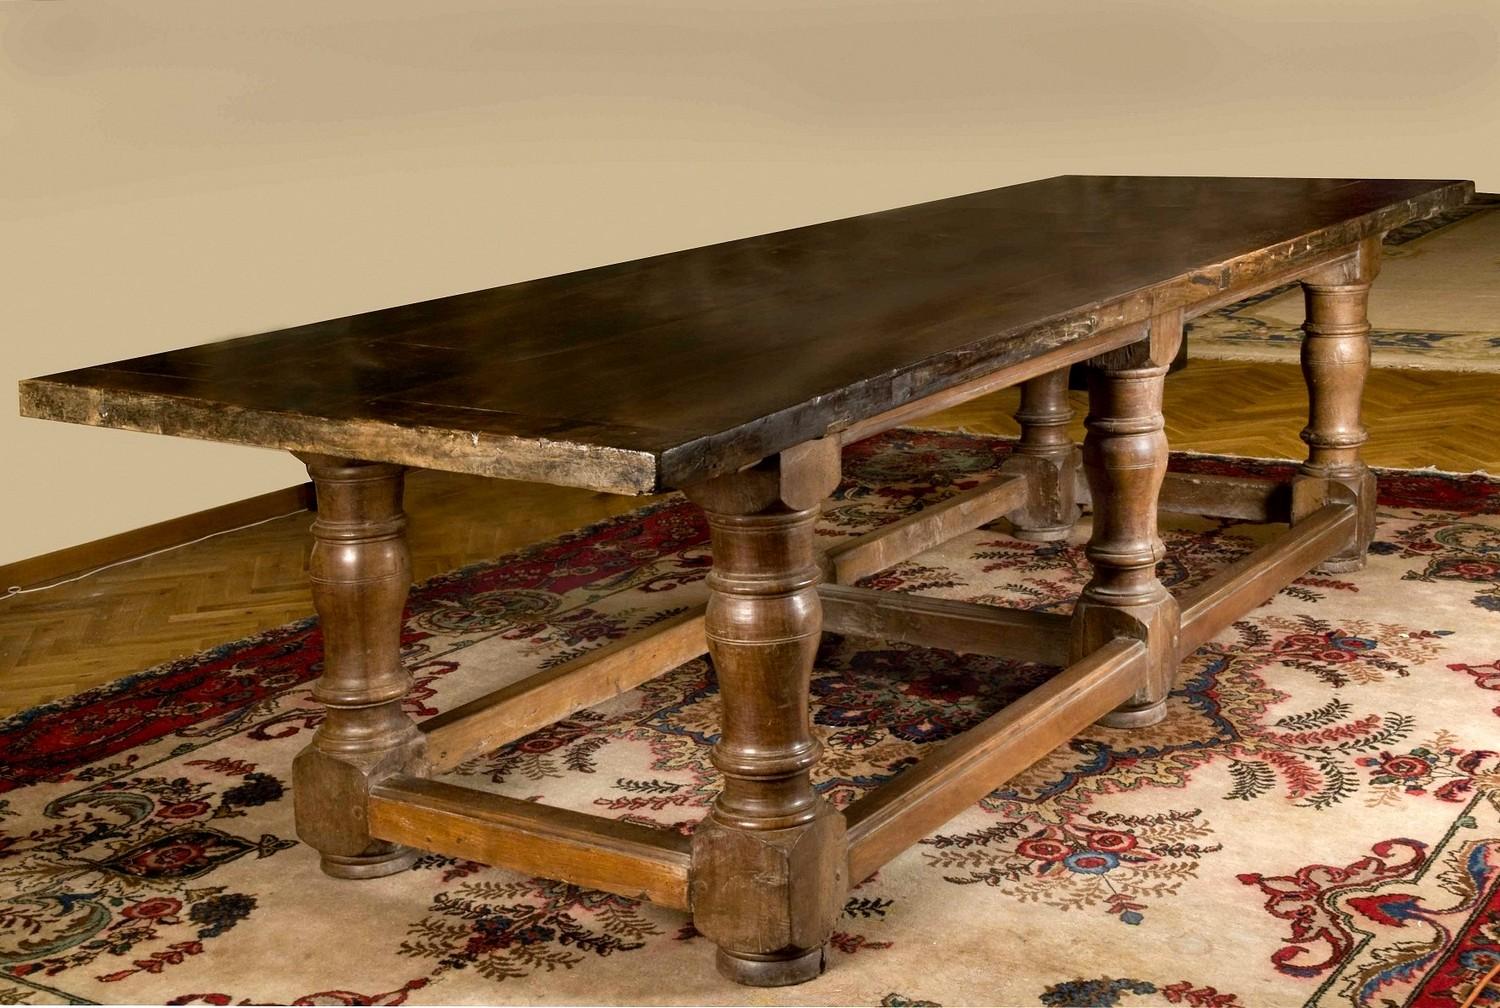 Cette charmante table de réfectoire rectangulaire à grande échelle du 17ème siècle, datant de la période baroque, est un magnifique exemple de l'artisanat rustique toscan.
Le plateau est constitué de quatre grandes planches de noyer brun massif,